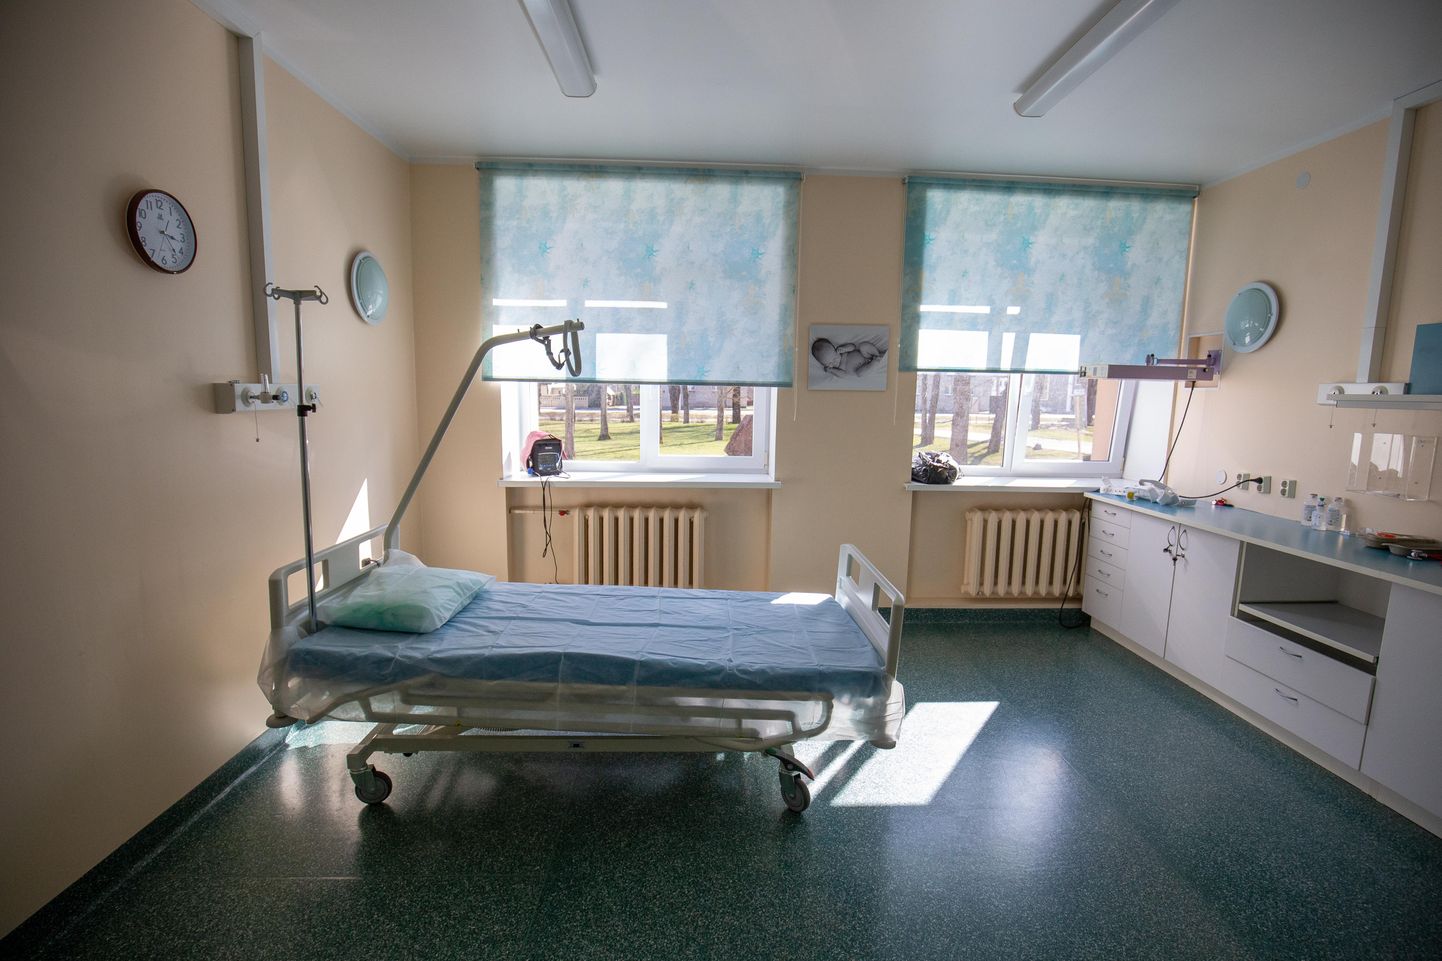 Järvamaa haigla isolatsioonipalatid koroonaosakonnas seisavad praegu tühjalt ning loodetavasti see nii ka jääb. Siis saab voodikohad peagi üle anda plaanilise ravi vajajatele.